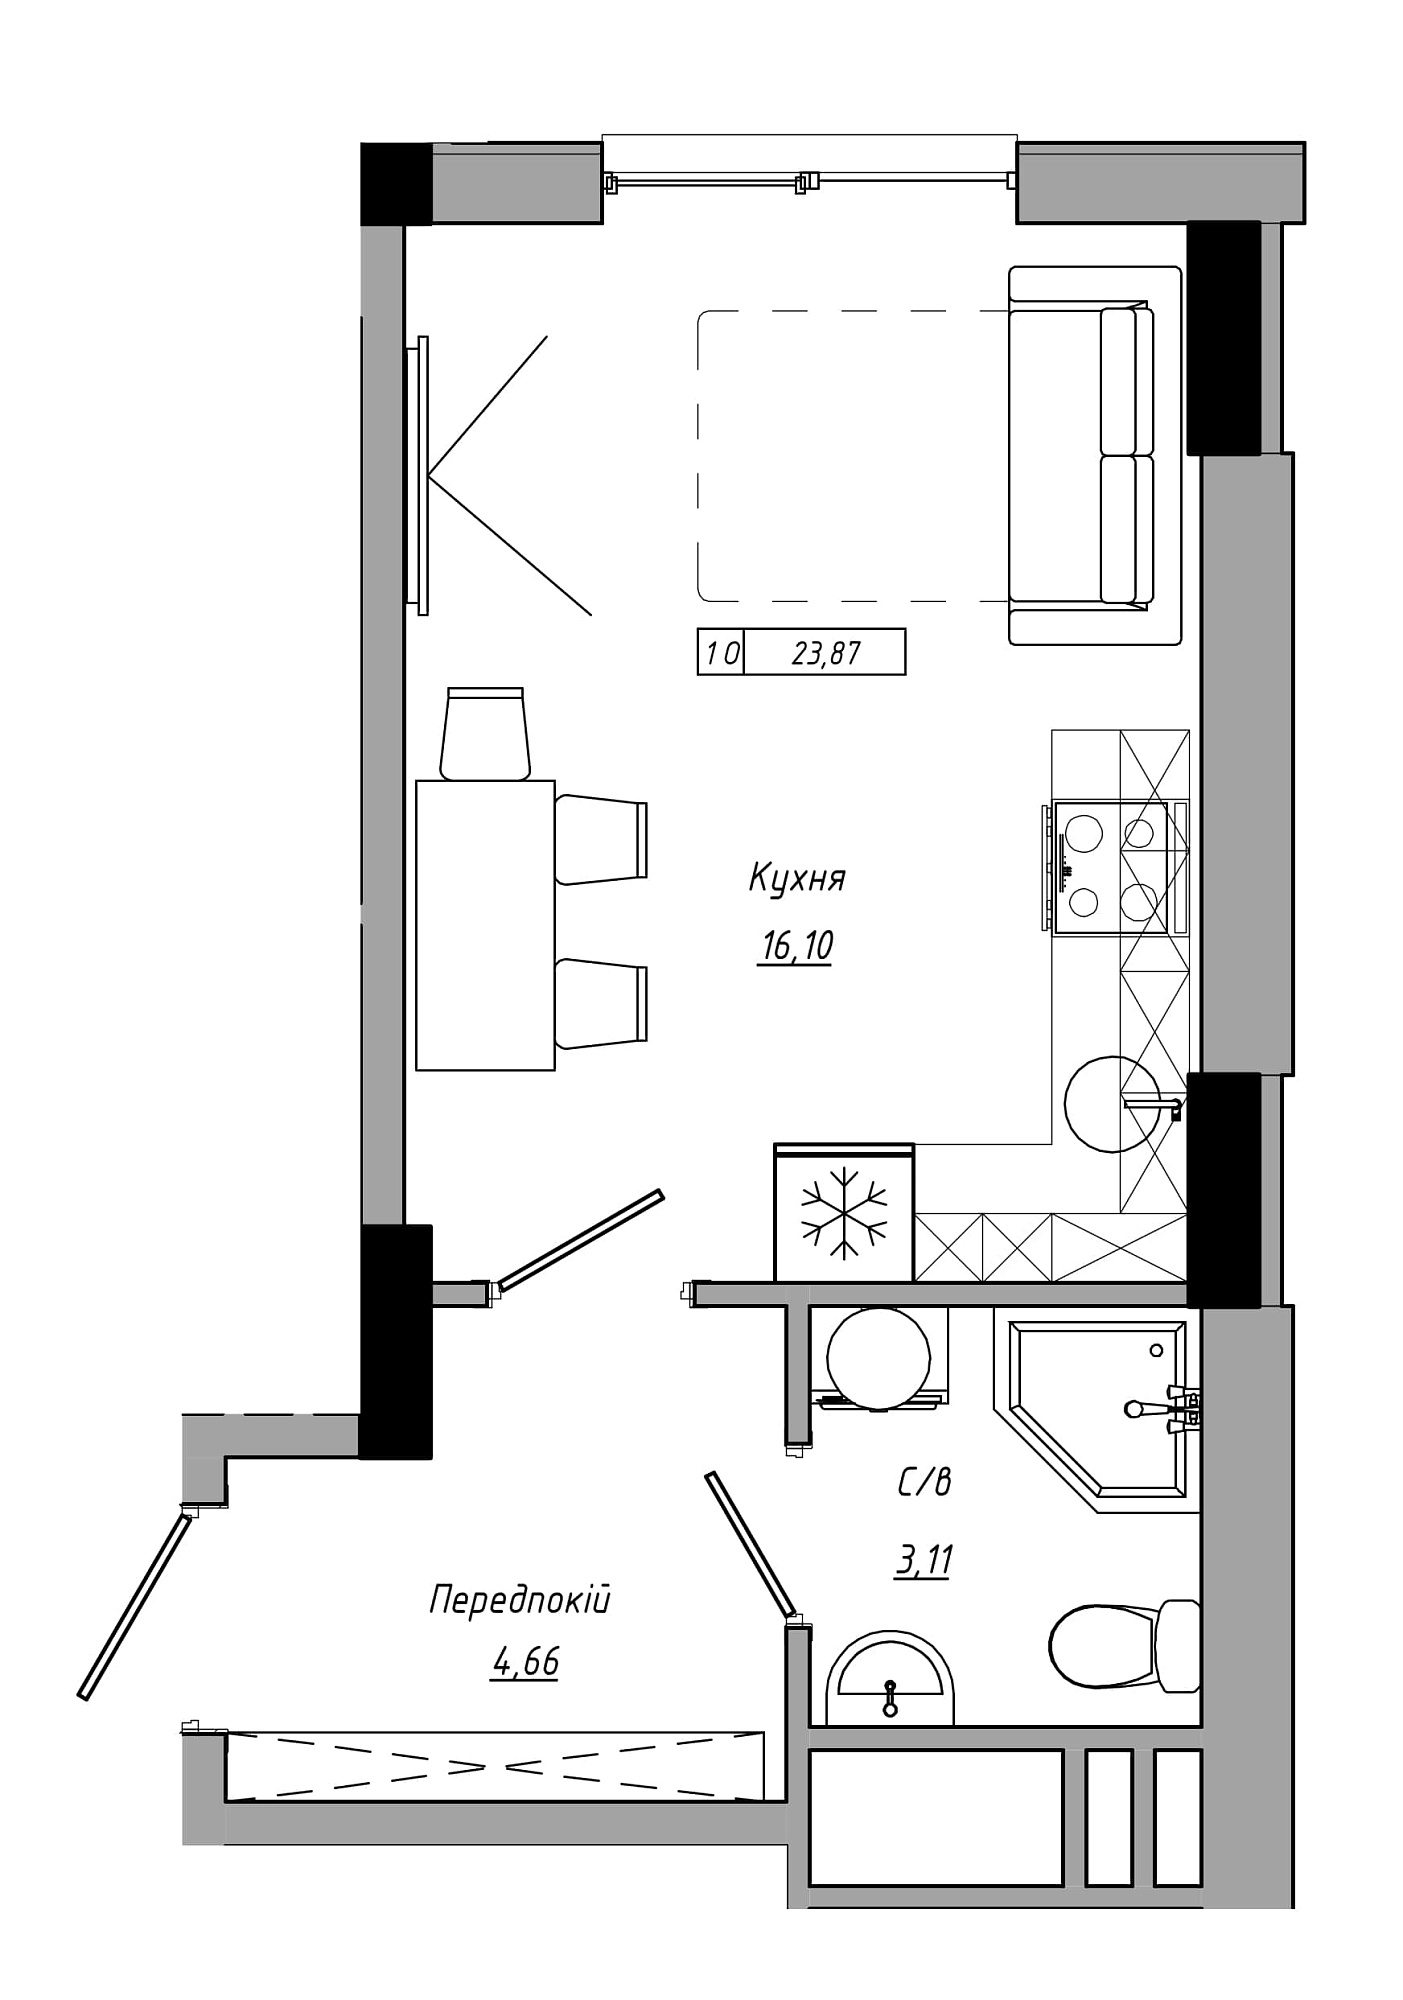 Планування Smart-квартира площею 23.87м2, AB-21-05/00017.